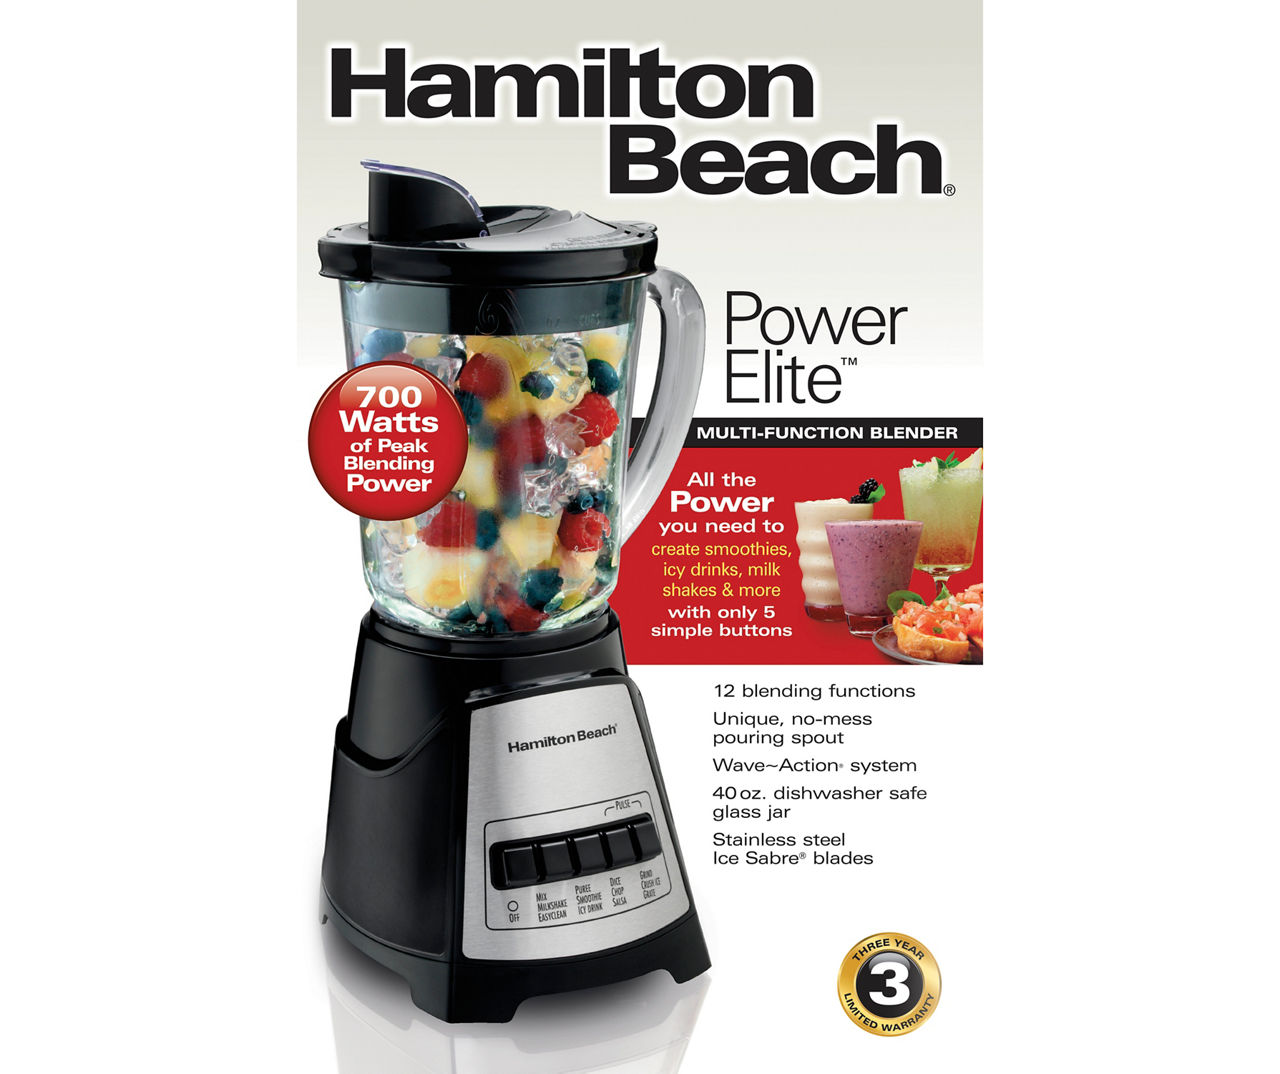 New Hamilton Beach Power Elite Blender - household items - by